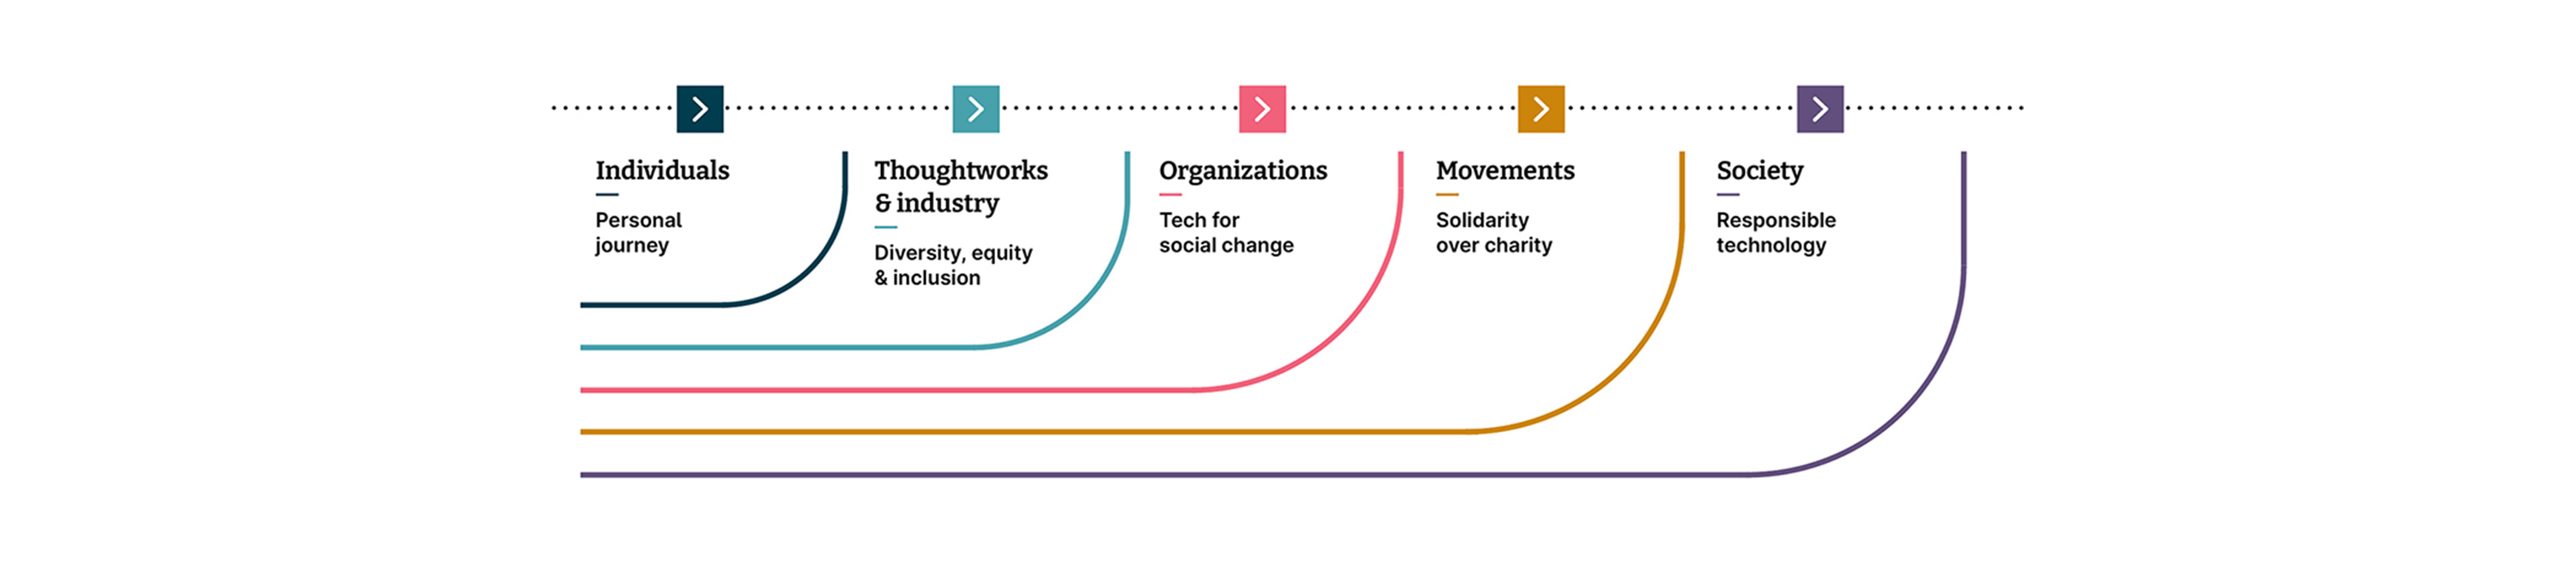 Die Hebel des sozialen Wandels: Individuum, Organisation, Branche, Bewegungen und Gesellschaft